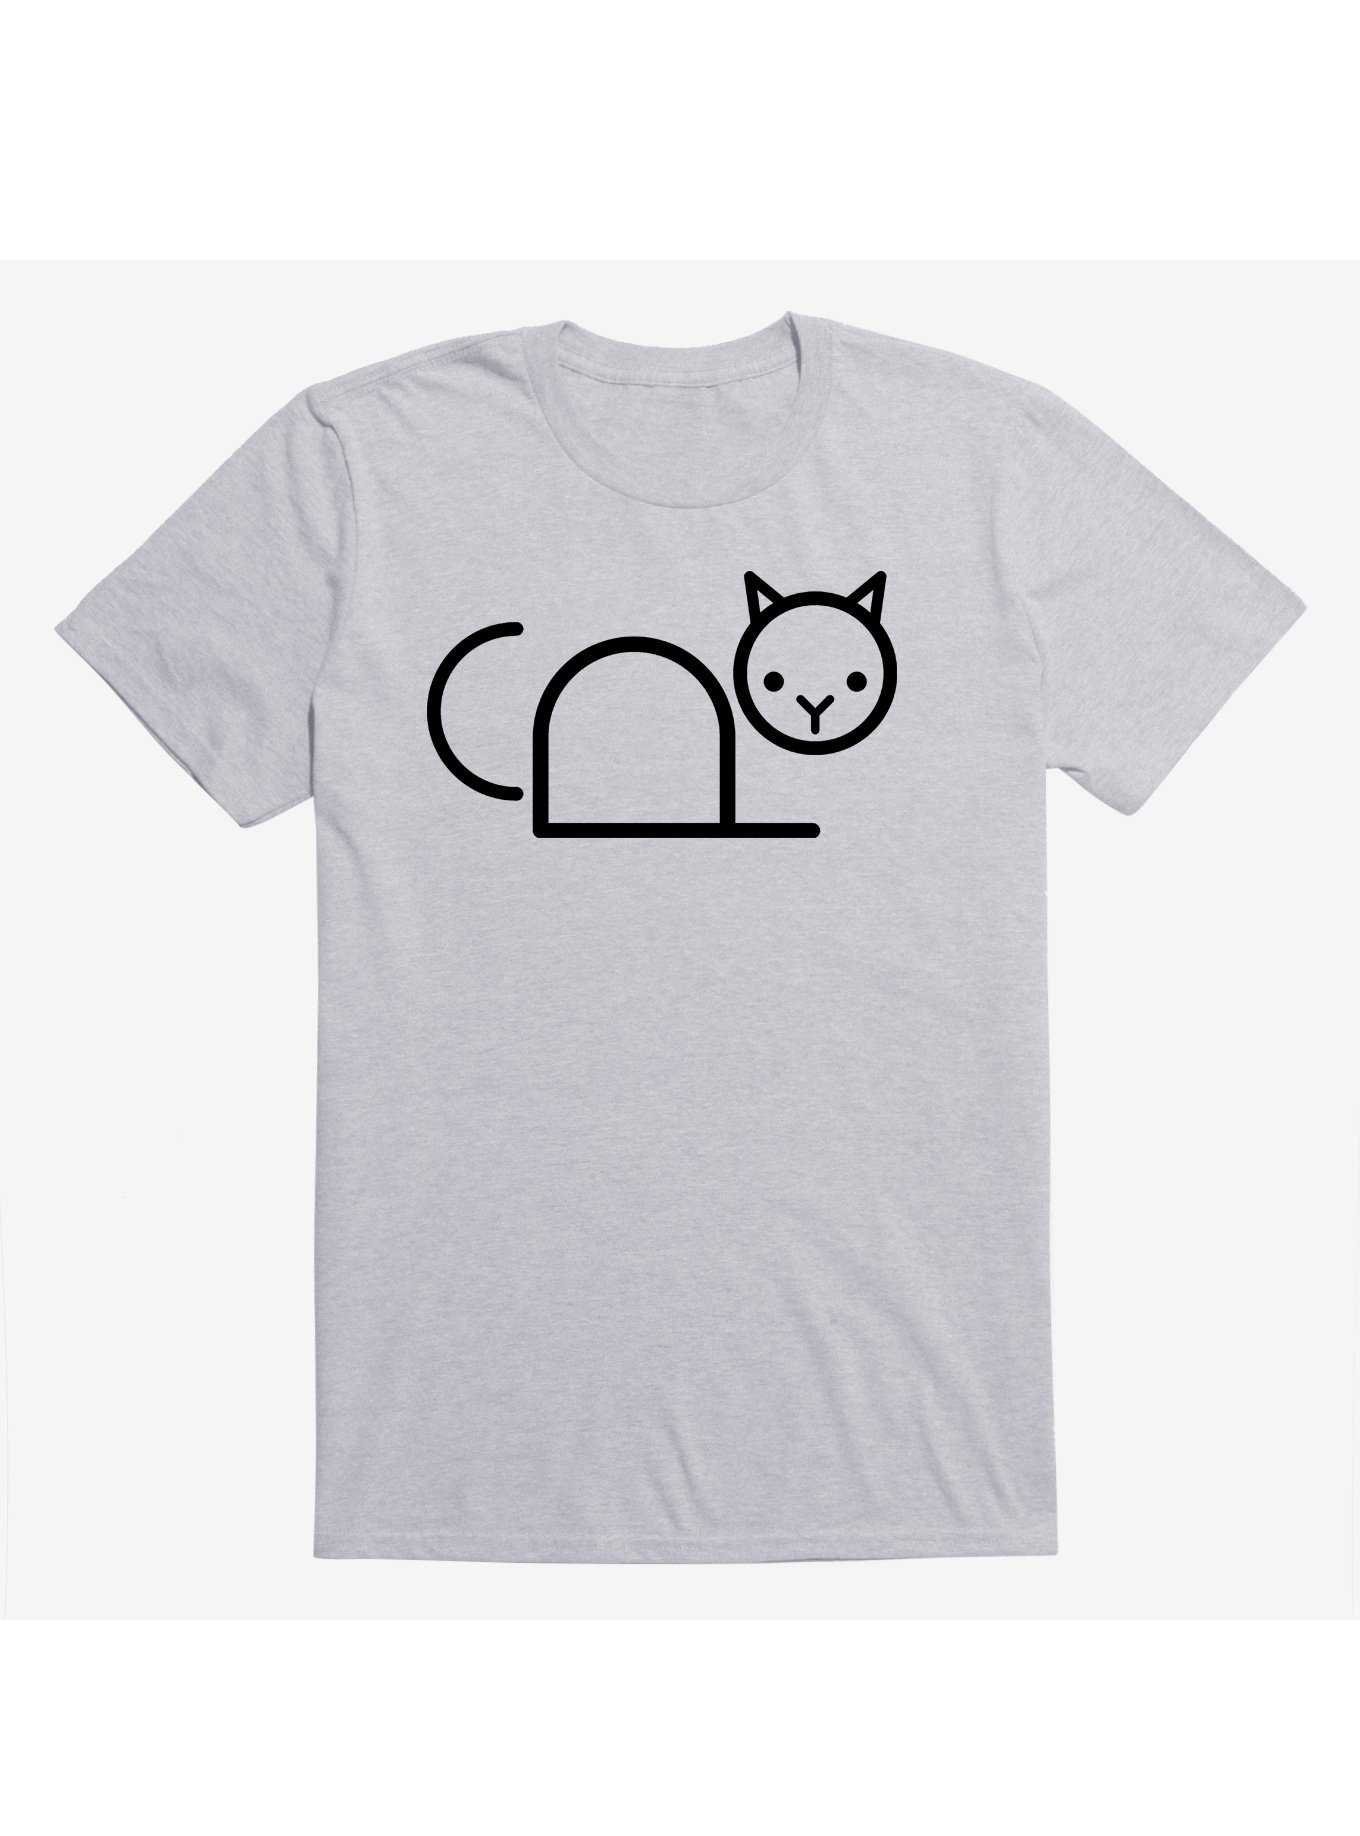 Copy Cat Sport Grey T-Shirt, , hi-res